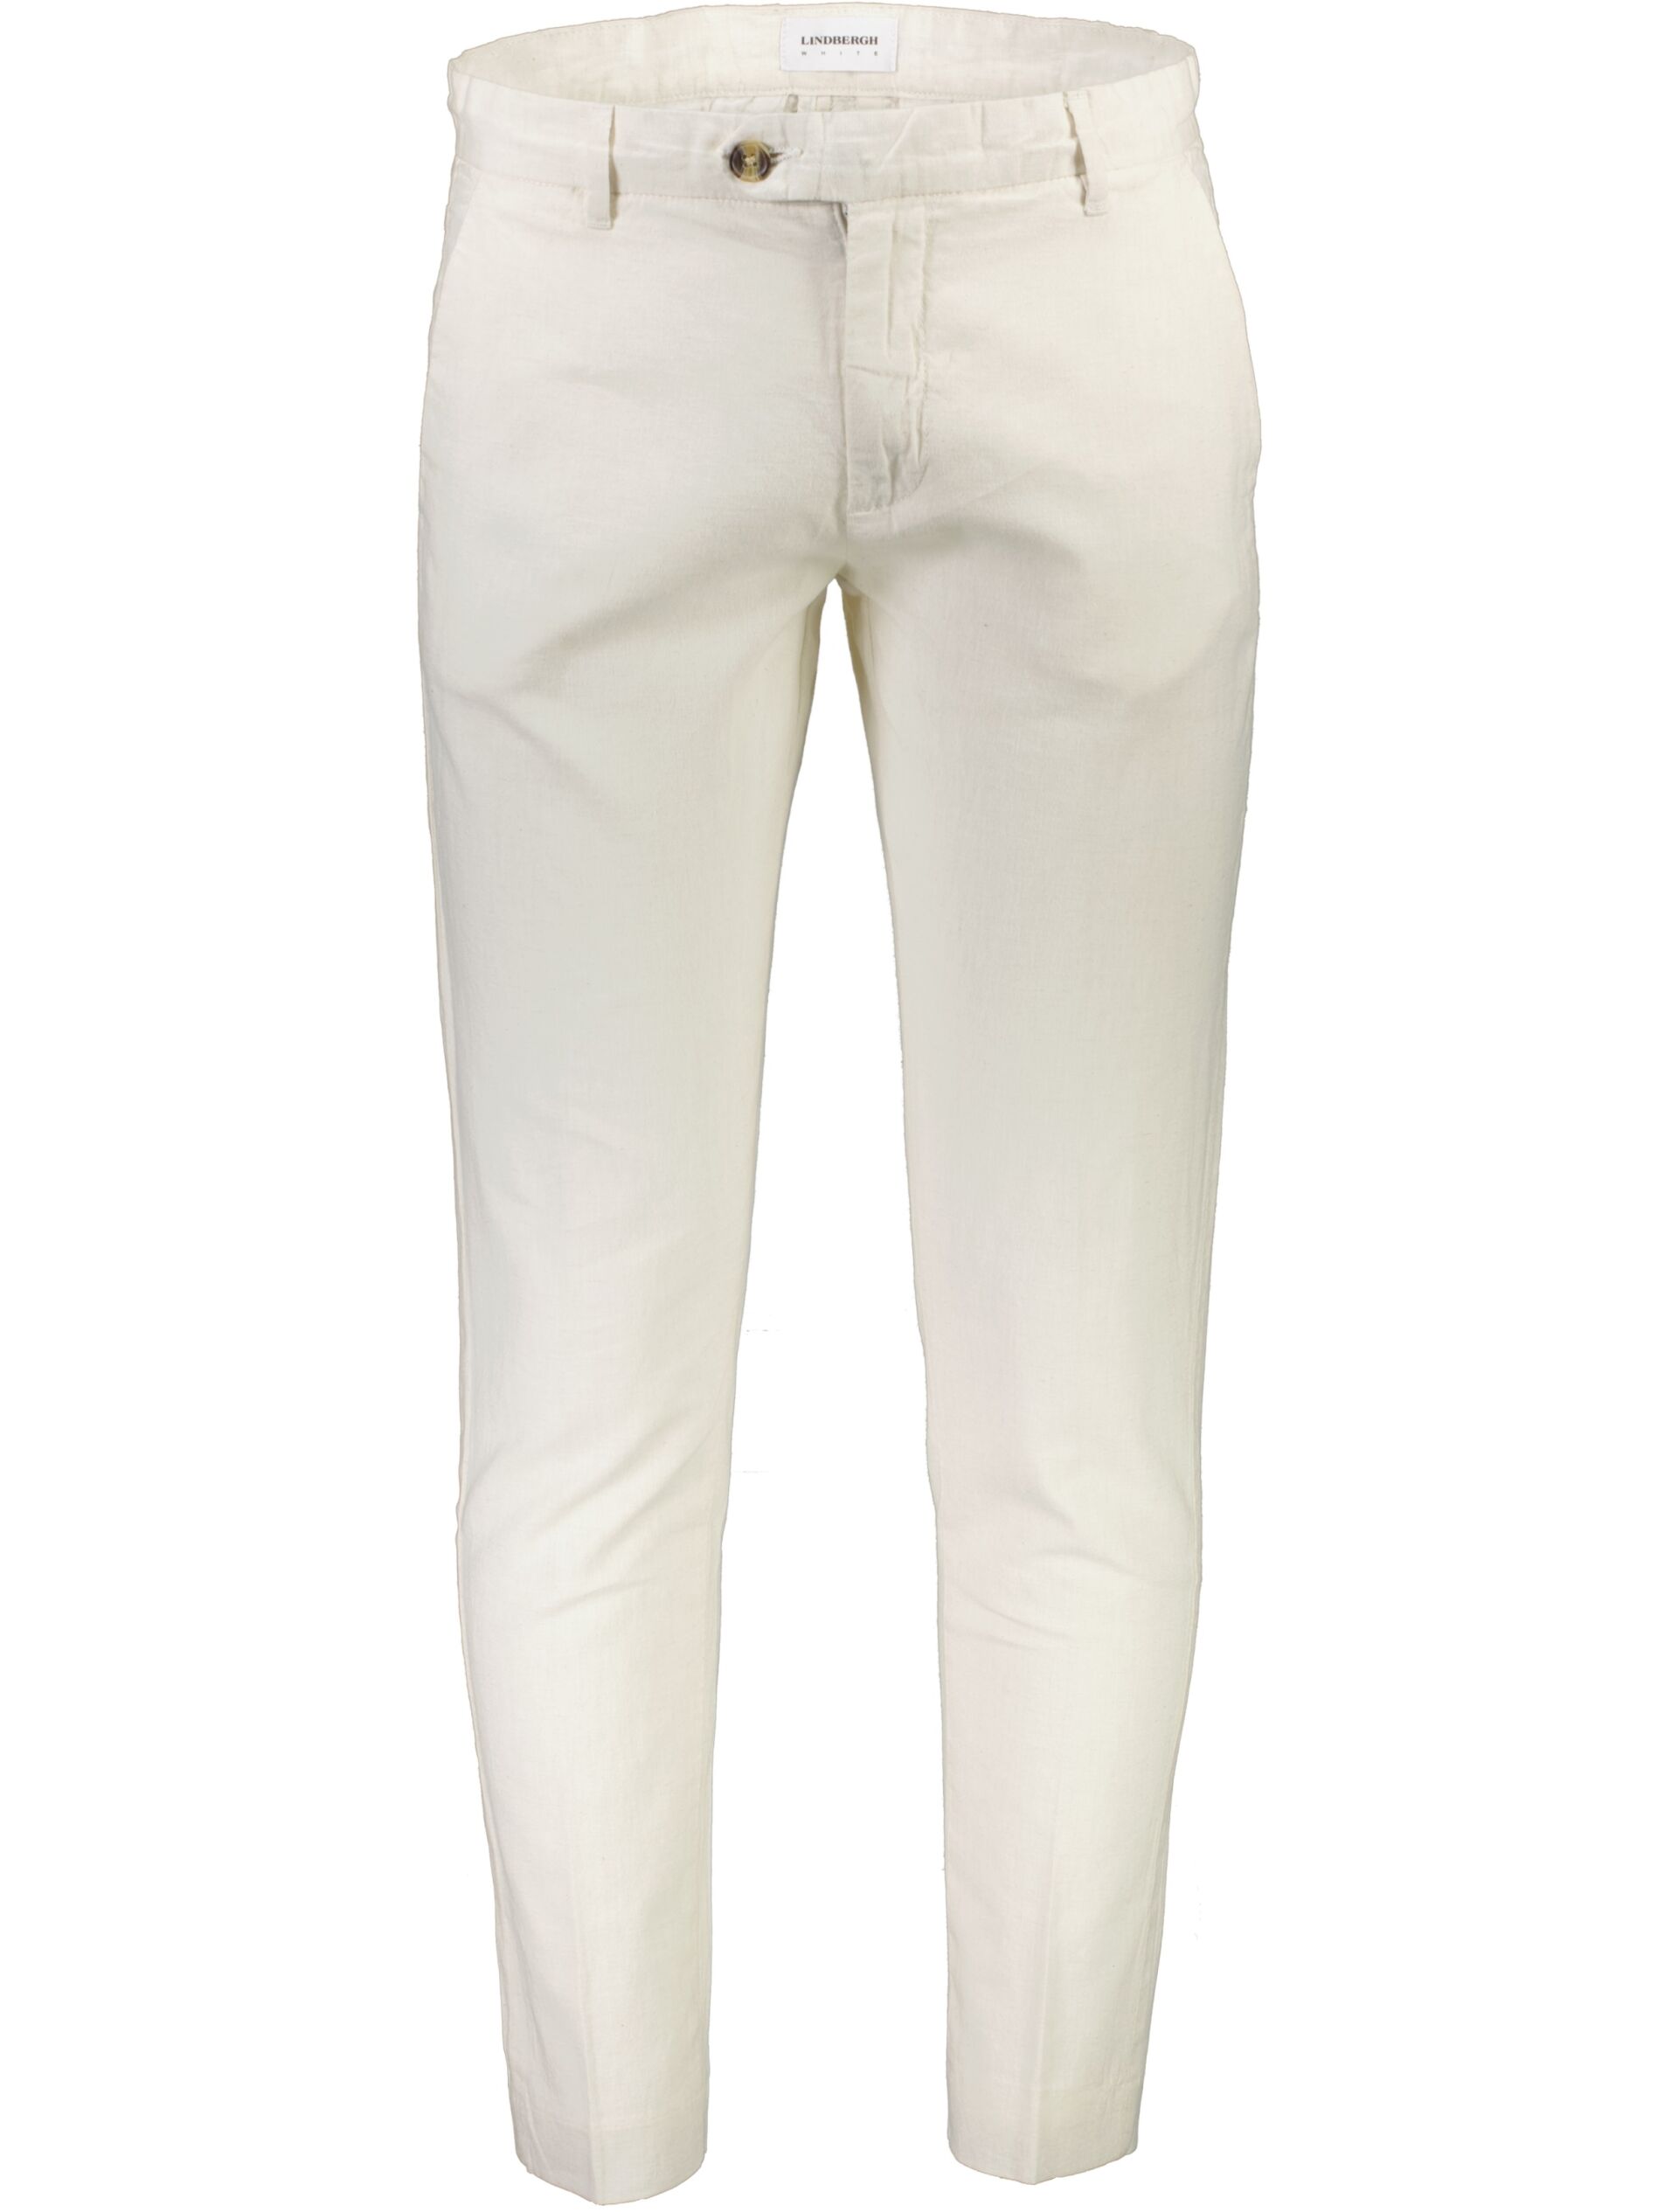 Lindbergh  Casual bukser 30-006015